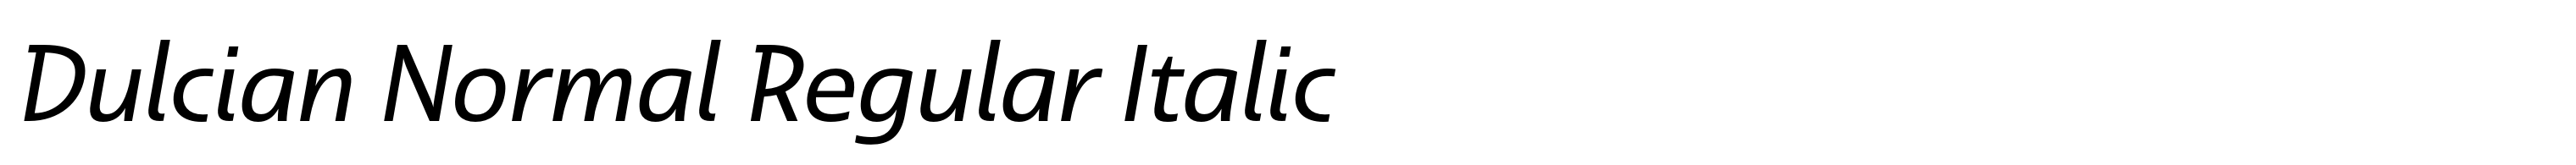 Dulcian Normal Regular Italic